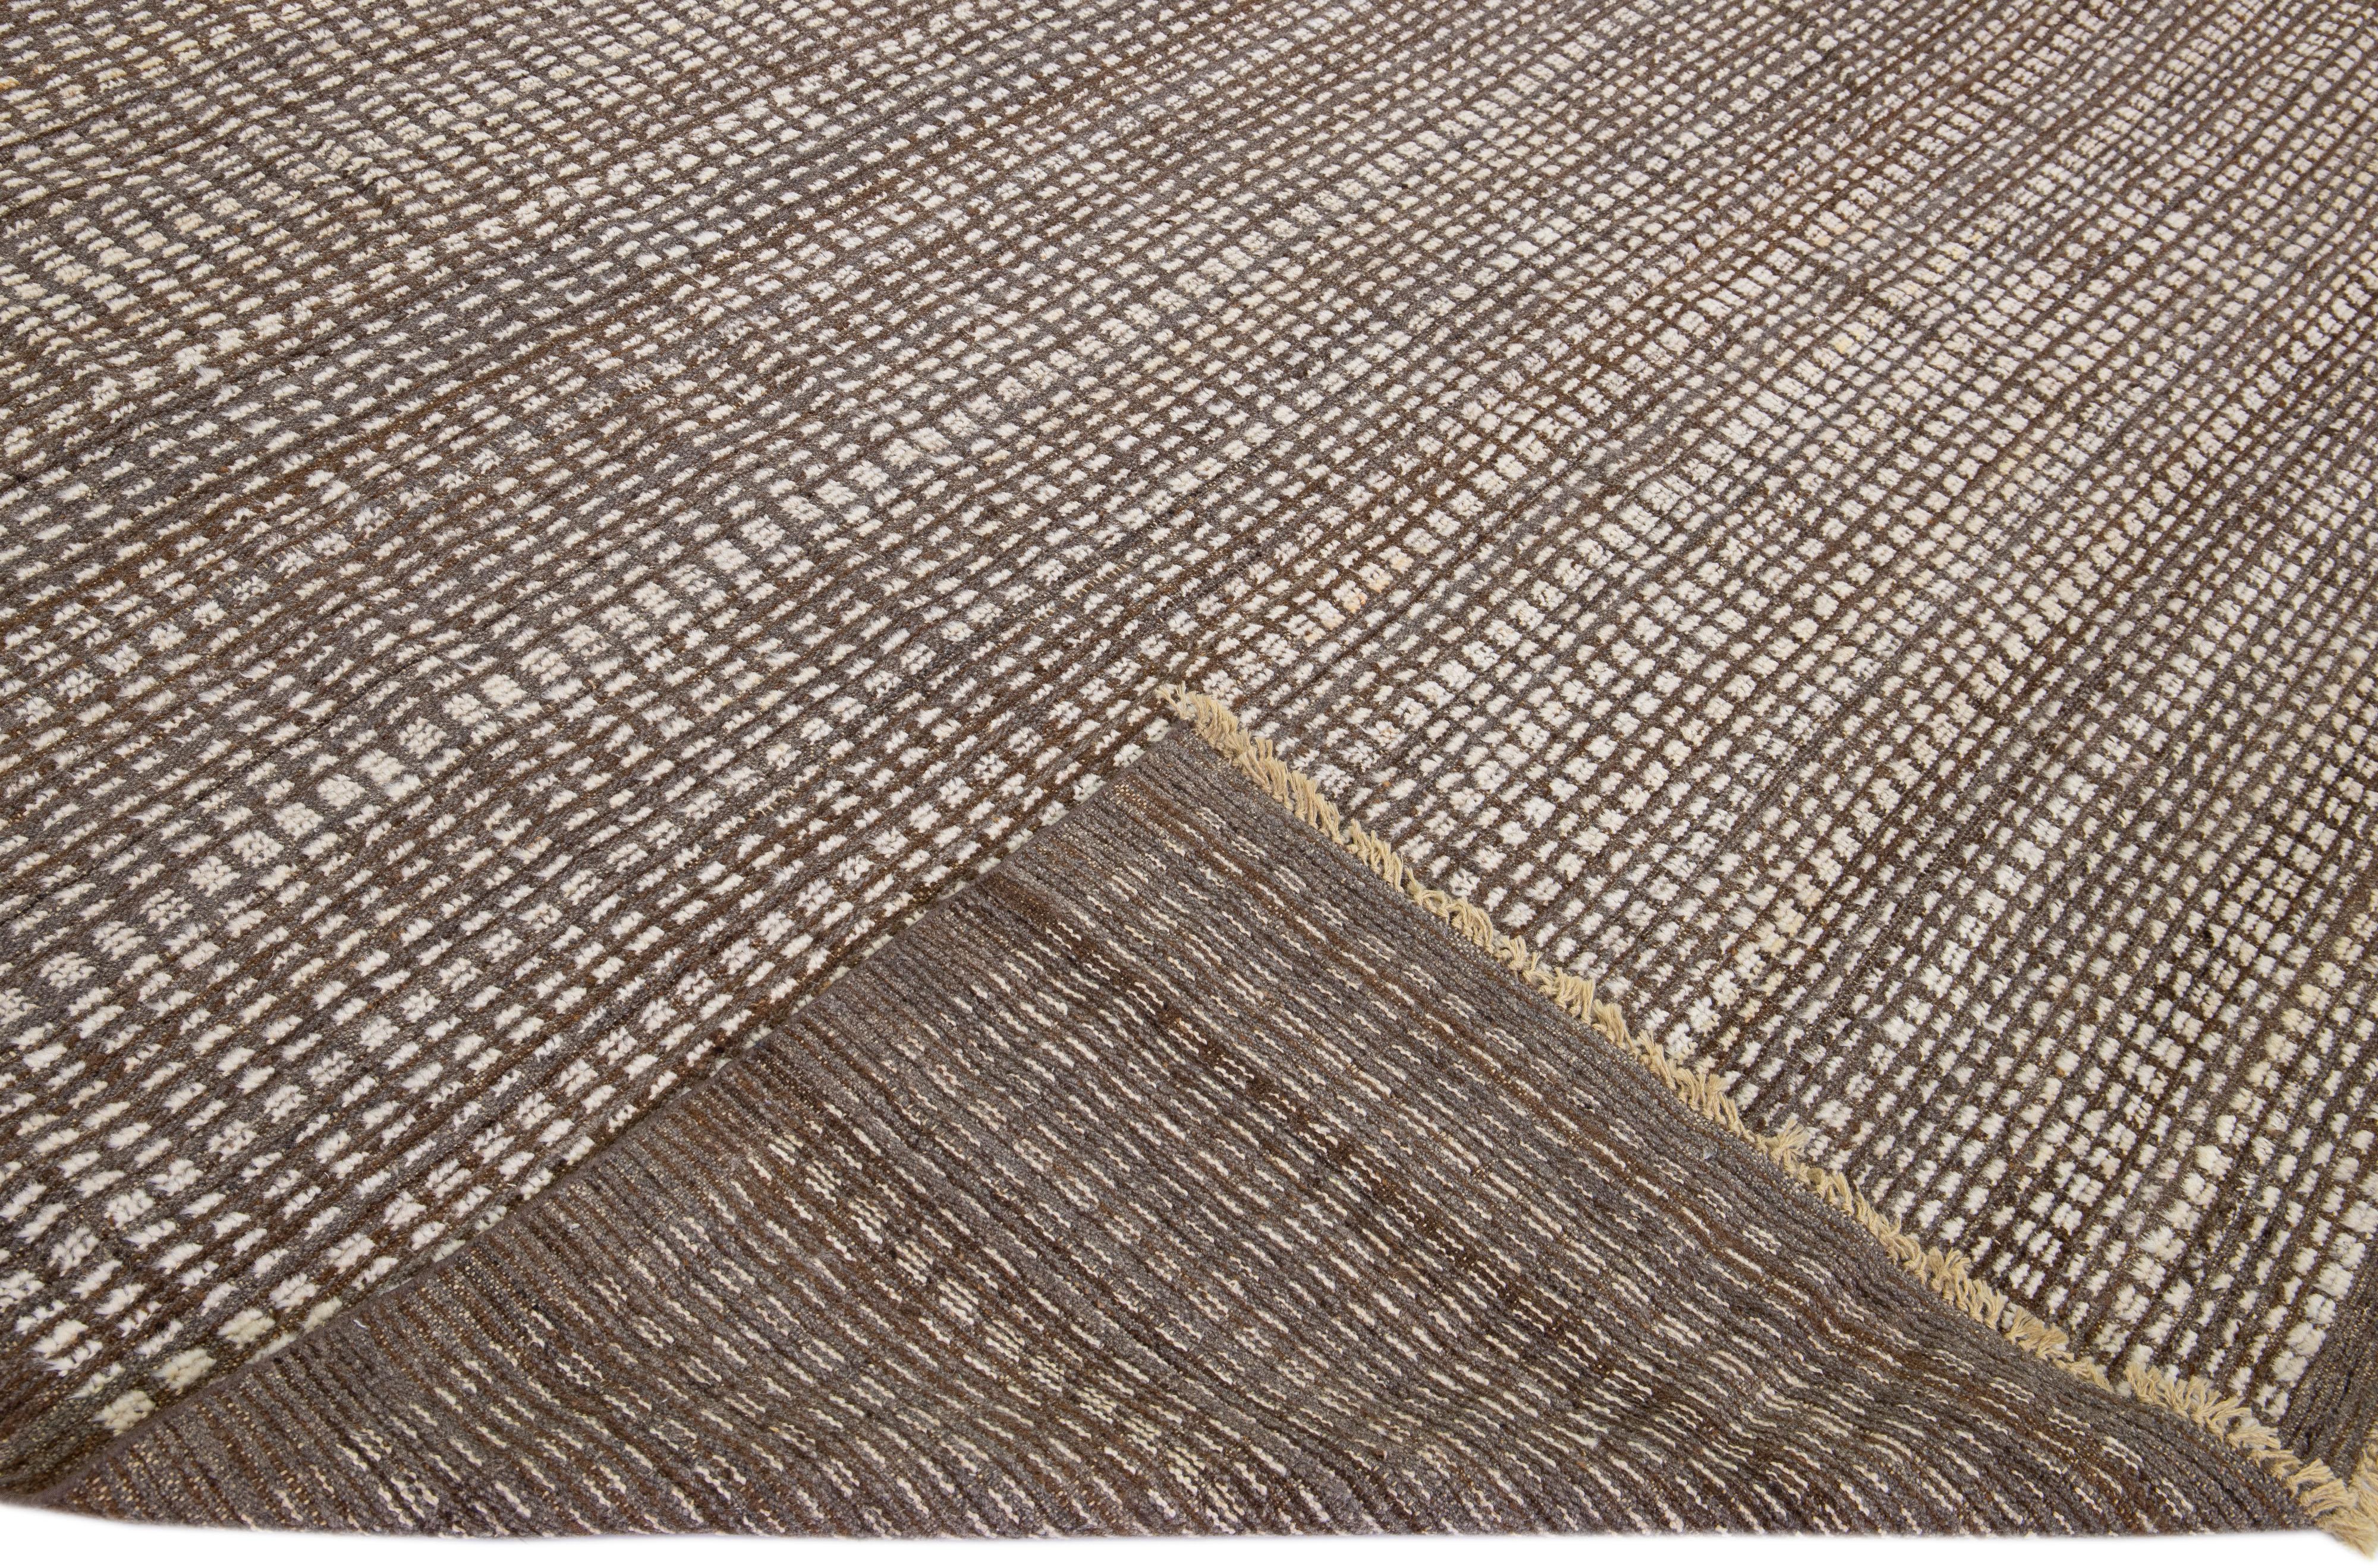 Schöner moderner, handgeknüpfter Wollteppich im marokkanischen Stil mit einem braunen Feld. Dieses Stück hat ein wunderschönes beigefarbenes, feines geometrisches Muster mit Fransen am oberen und unteren Ende.

Dieser Teppich misst: 9'5